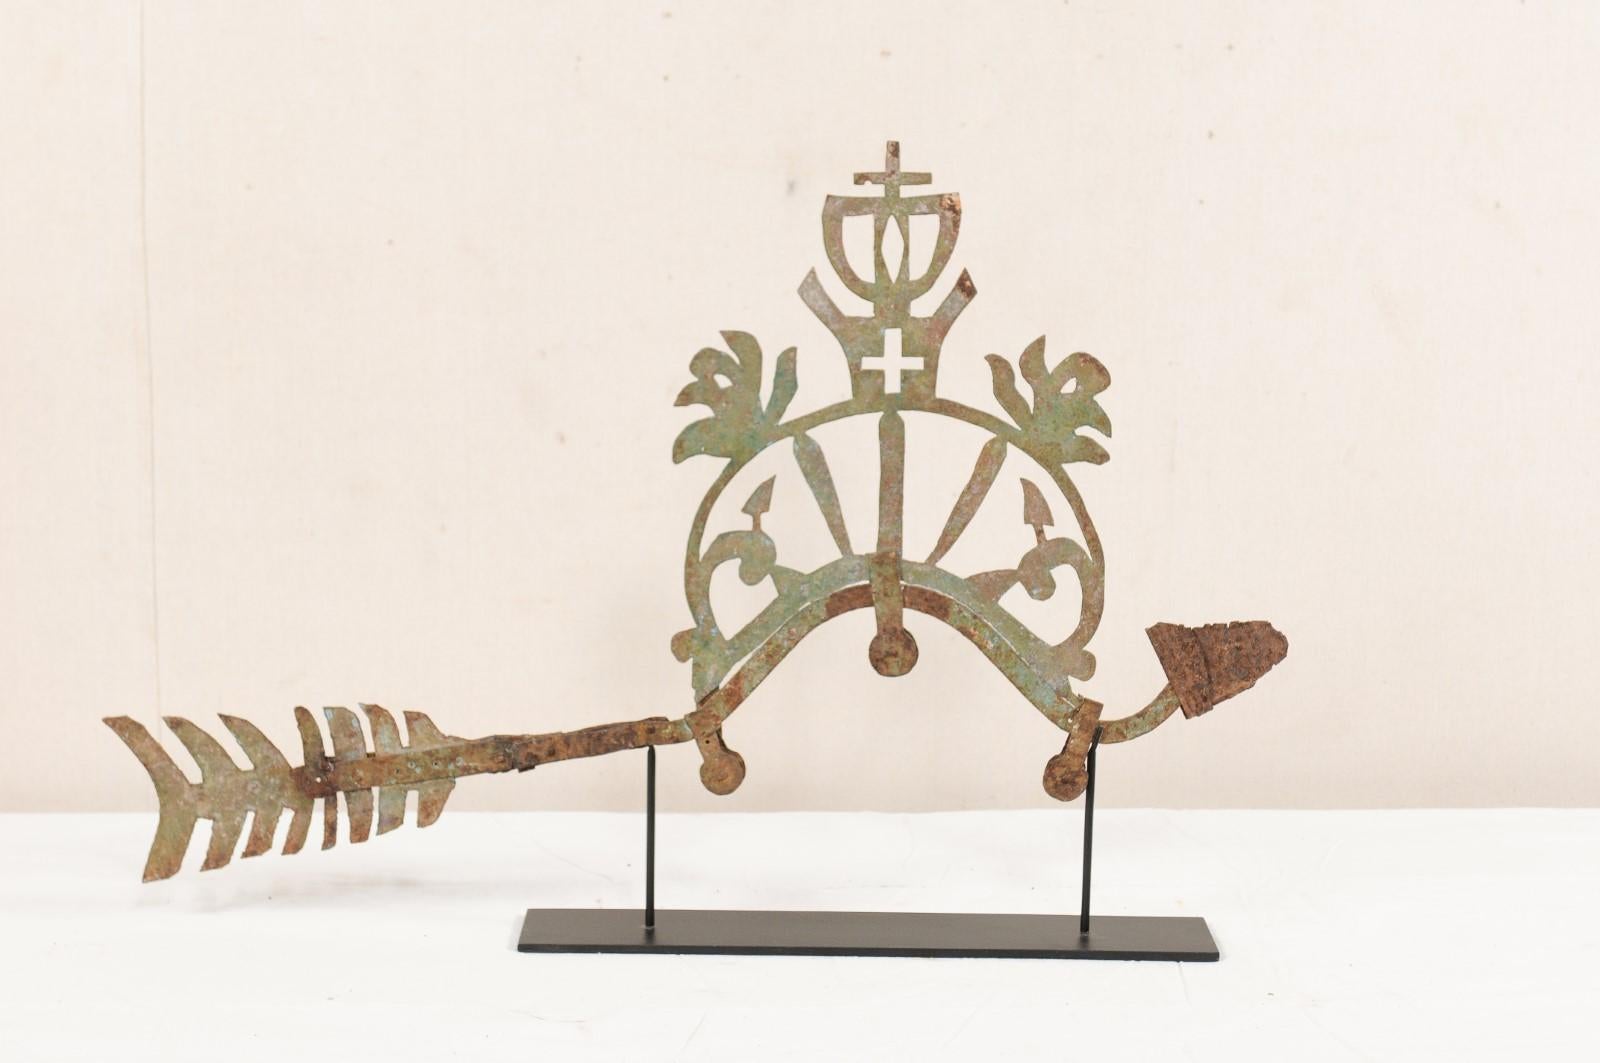 Ein ornamentales Vogelfragment aus dem 19. Jahrhundert, präsentiert auf einem Ständer. Dieses antike dekorative Metallstück aus Indonesien zeigt einen Vogel mit Krone und Kreuzmotiv in der Mitte, der auf einem speziell angefertigten schwarzen